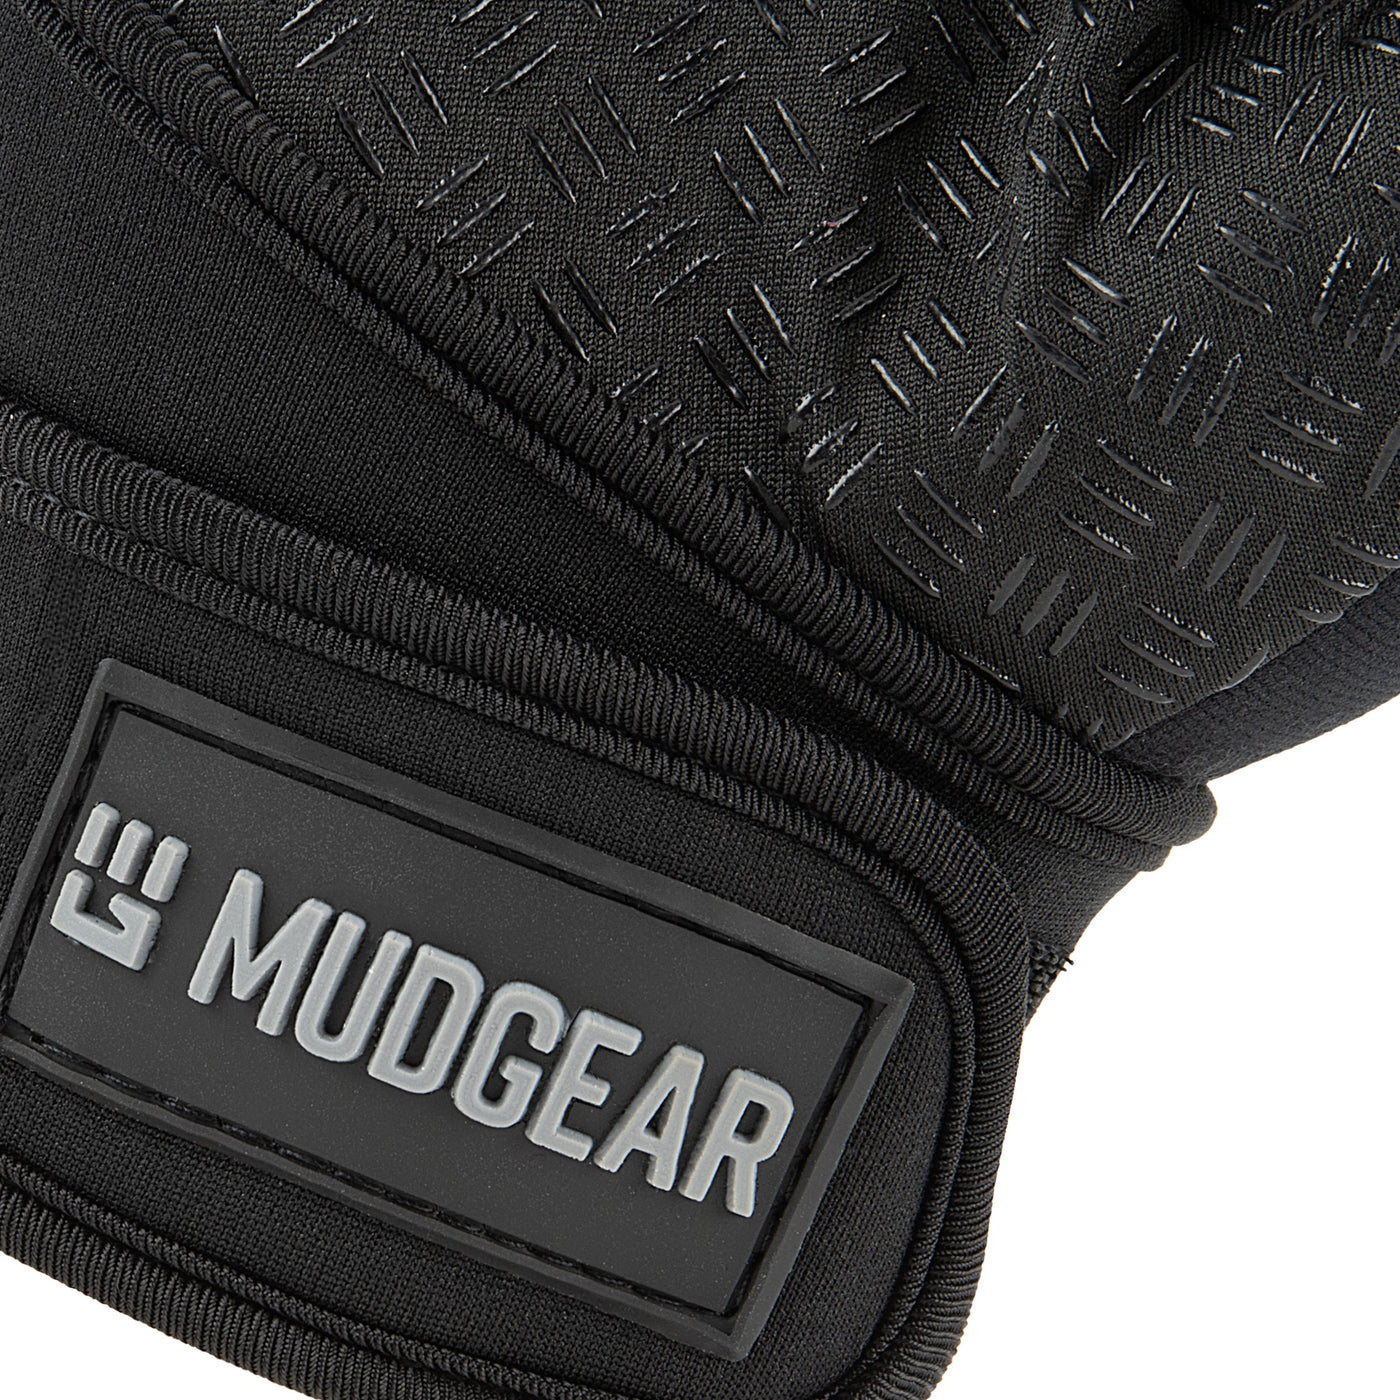 MudGear OCR Gloves